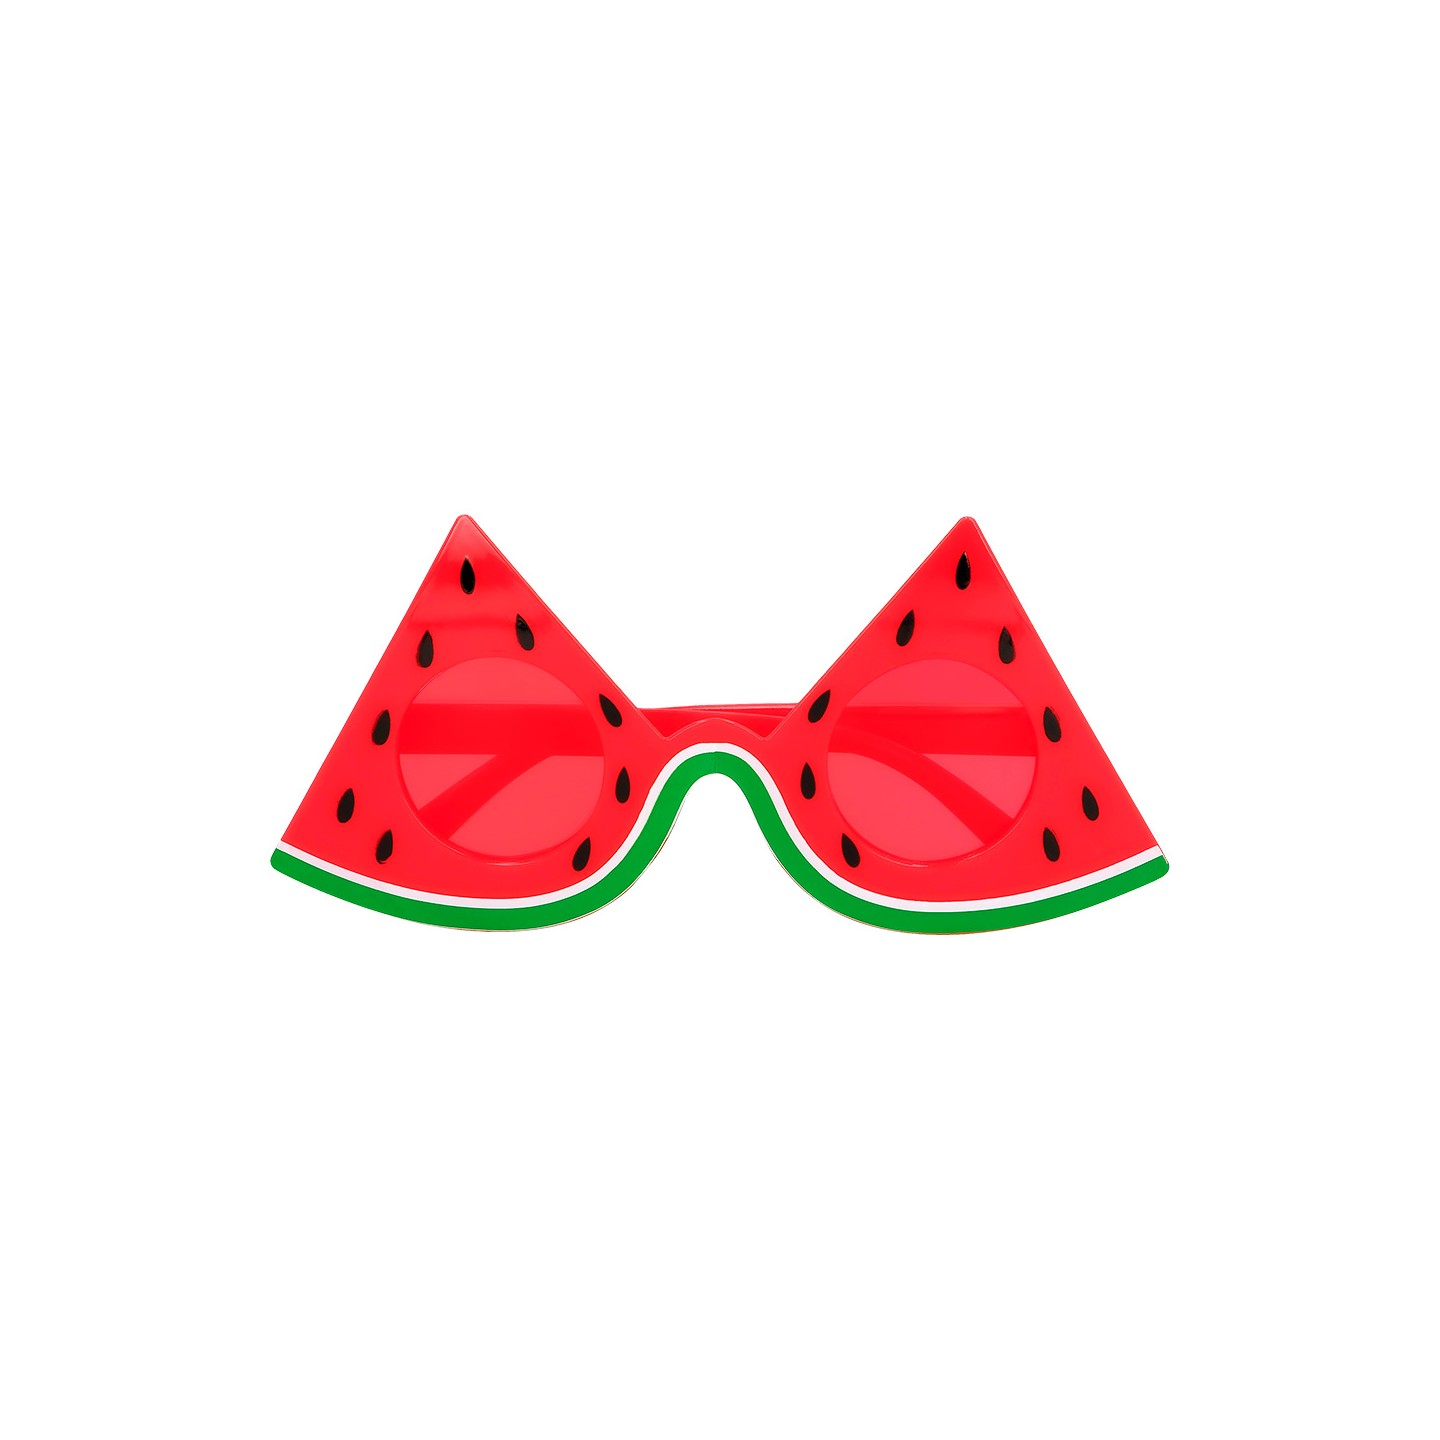 gekke feestbril grappige party bril watermeloen